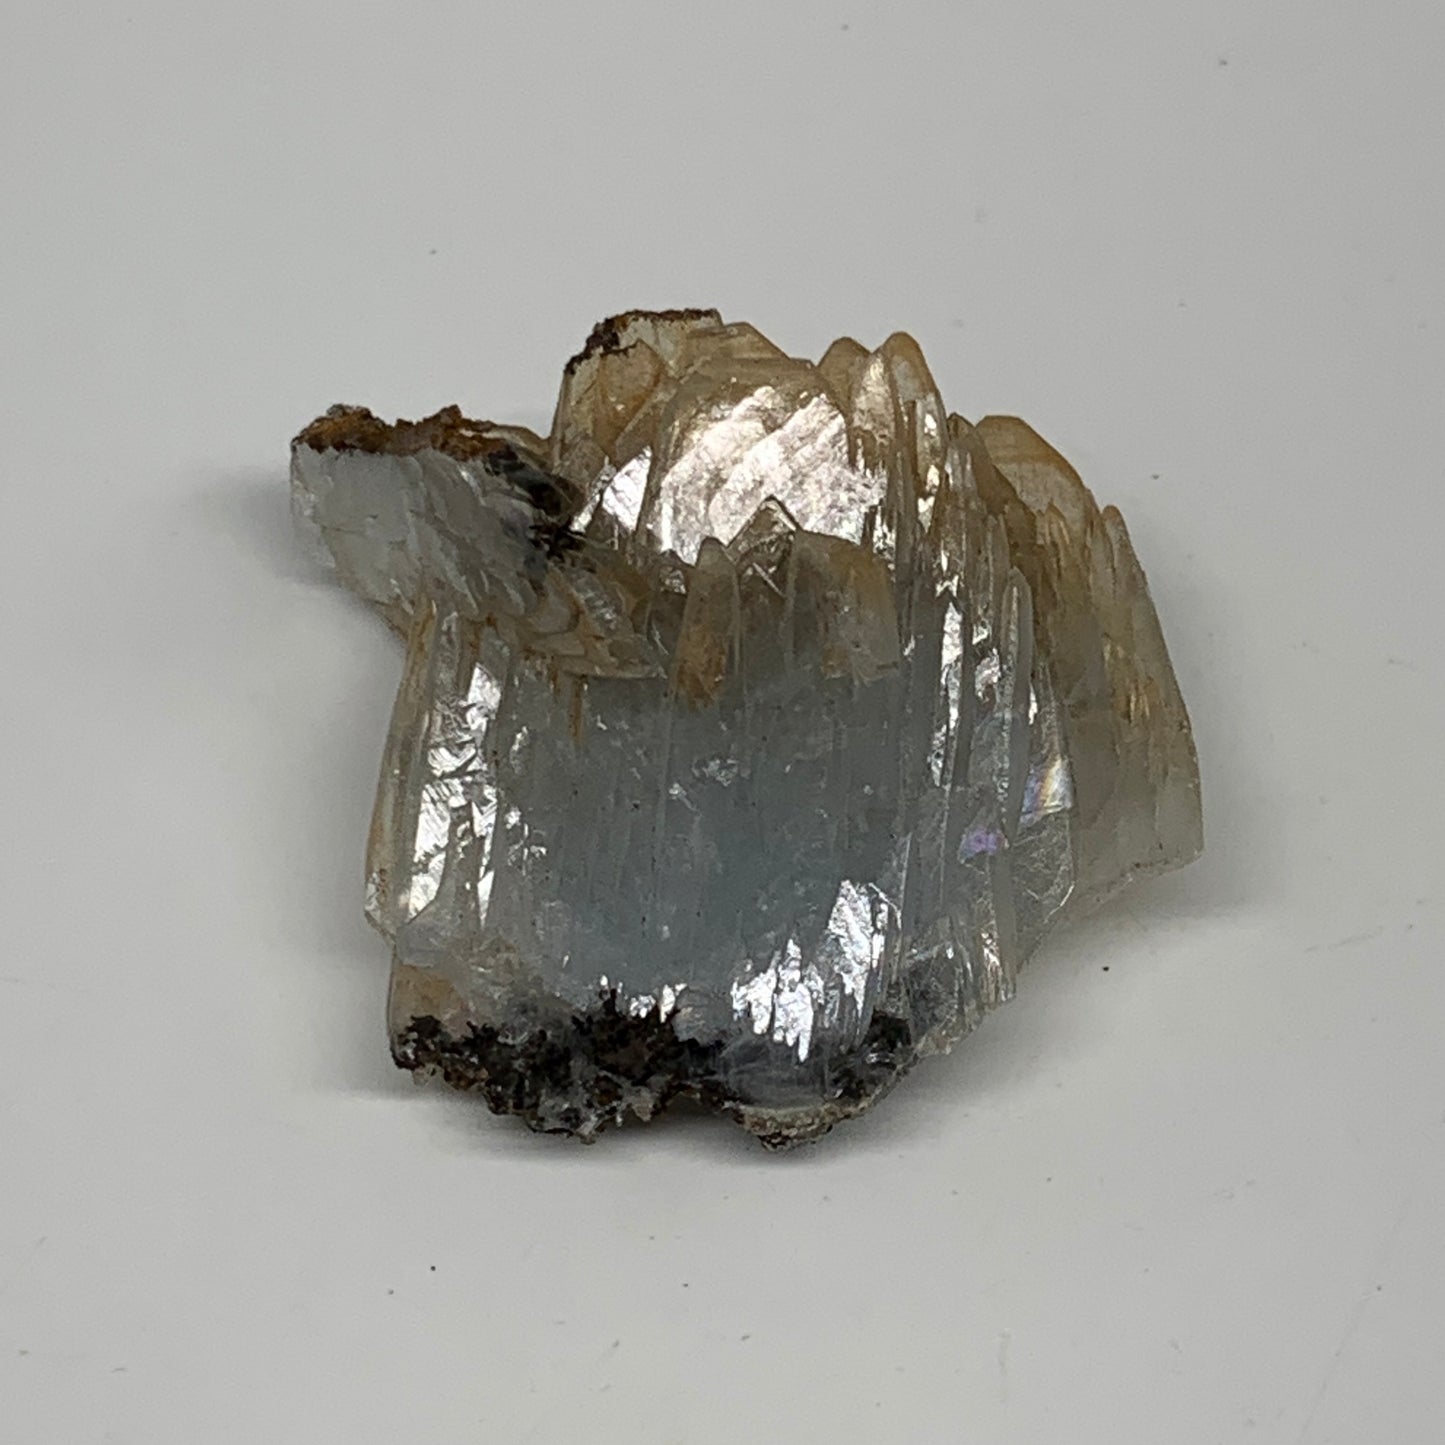 49.5g, 1.7"x1.7"x0.9", Small Blue Barite Mineral Specimen @Morocco, B10826